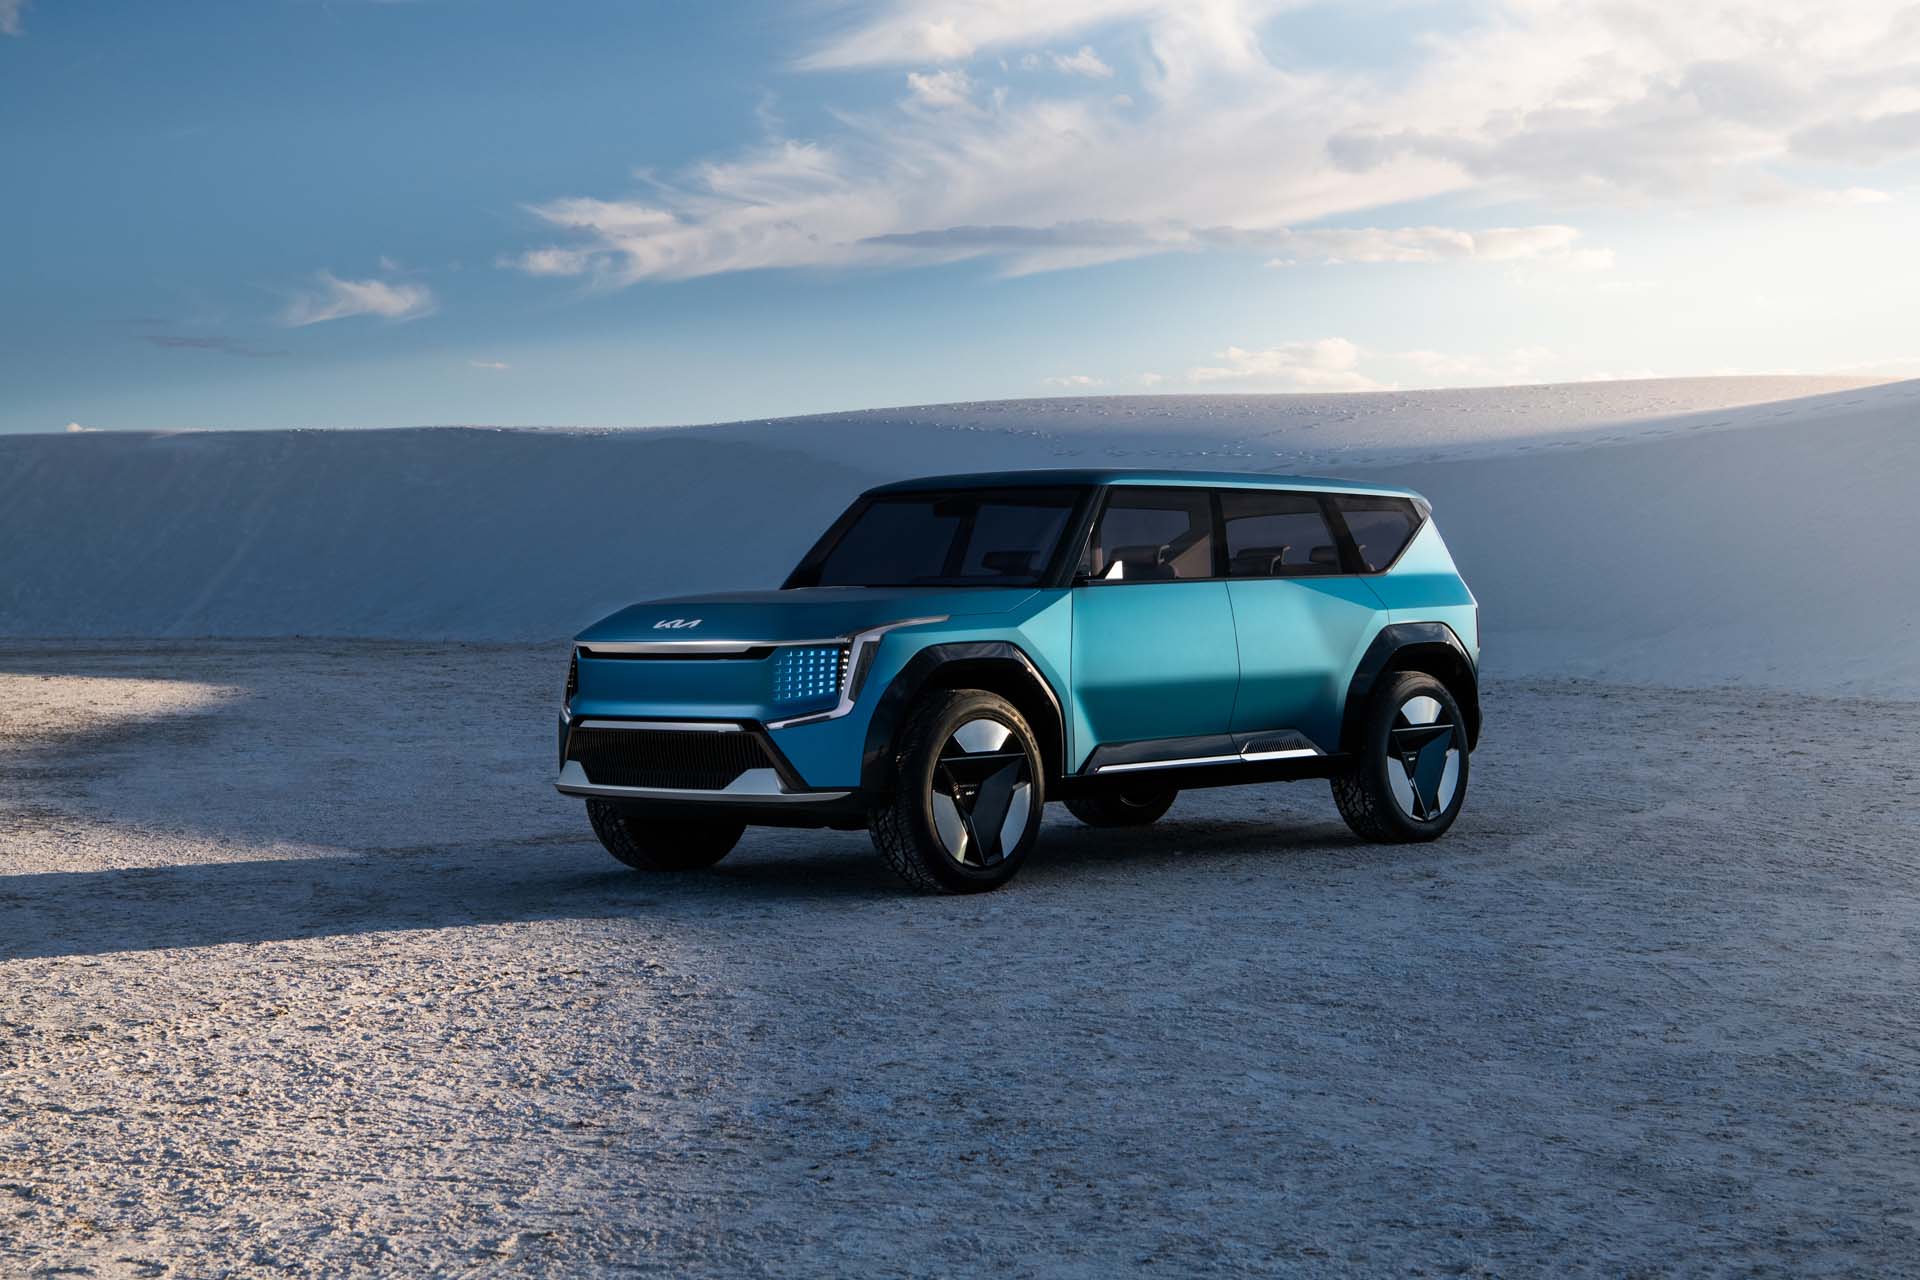 EV9 รถยนต์ไฟฟ้า SUV คันใหม่ จาก Kia ยืนยันผลิตจริงพร้อมวางขาย ในยุโรปปี 2023